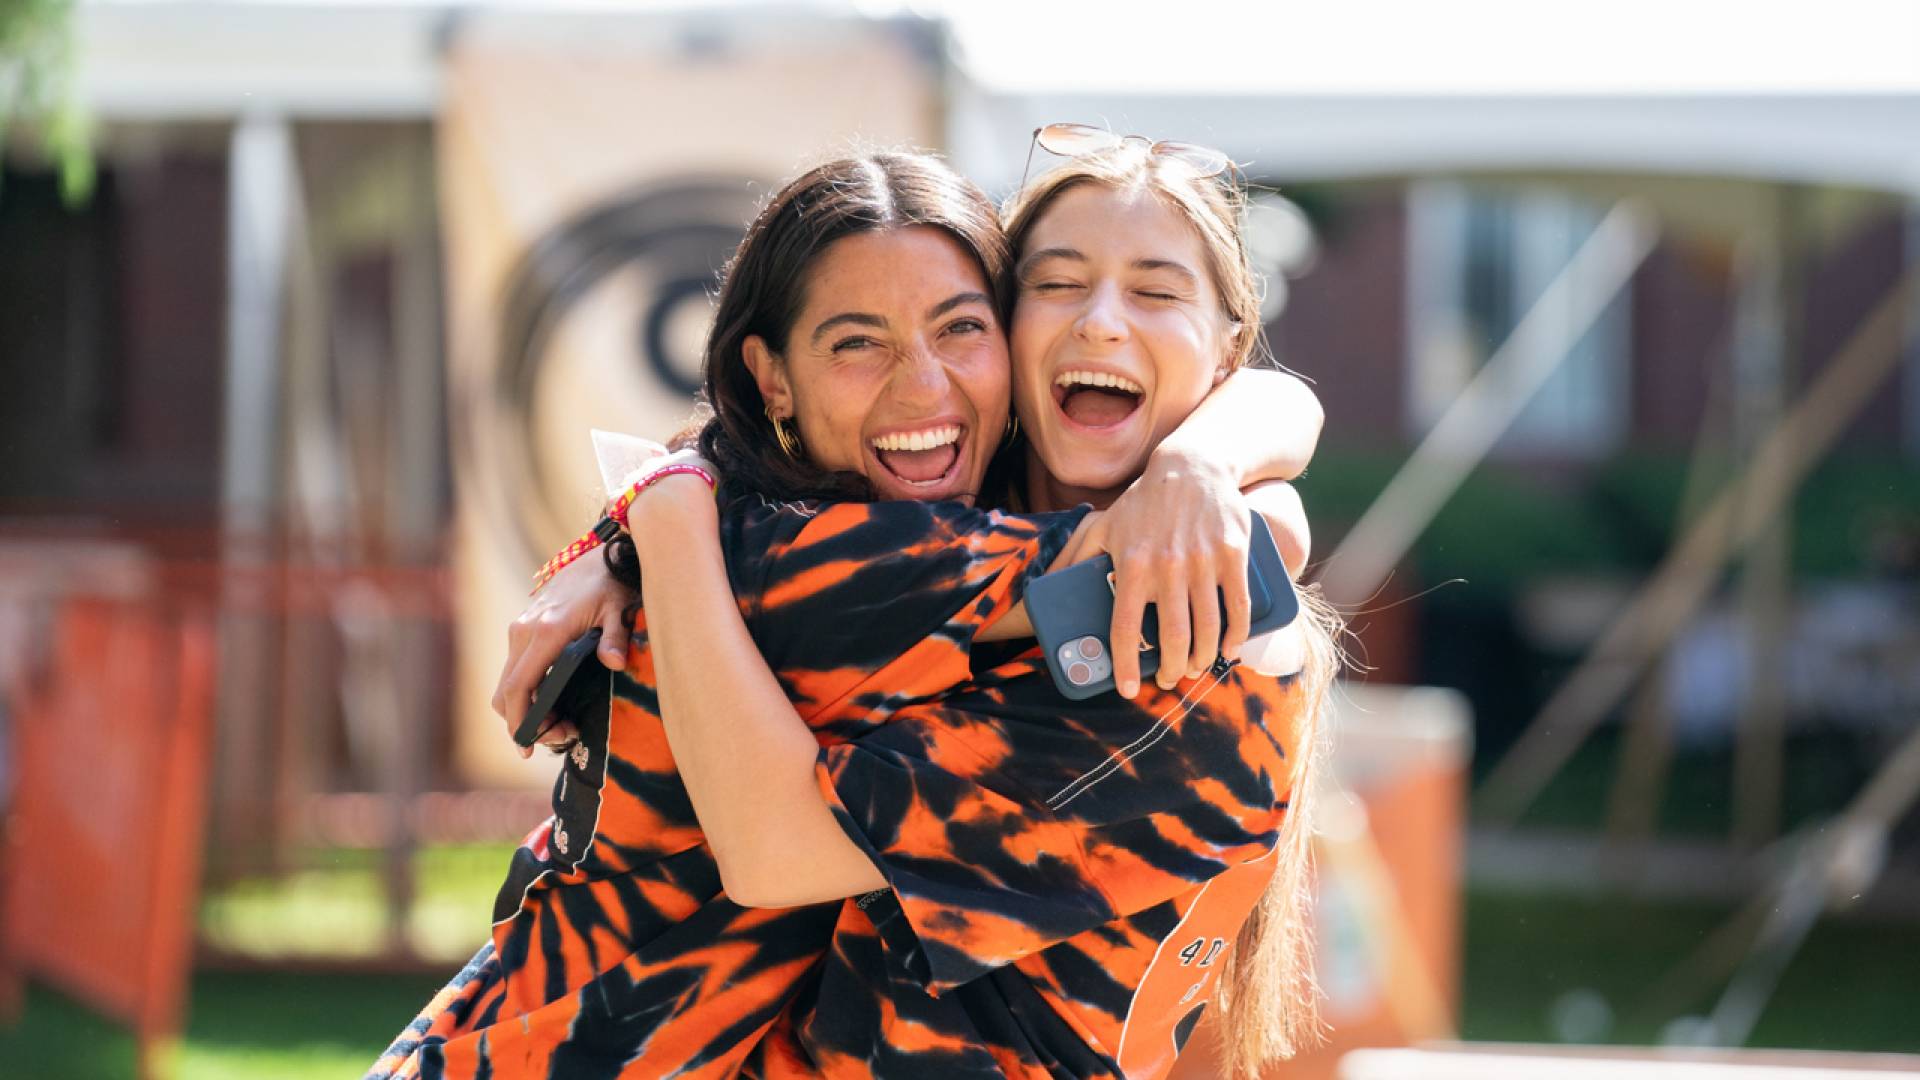 Two alumni hugging wearing tiger print shirts